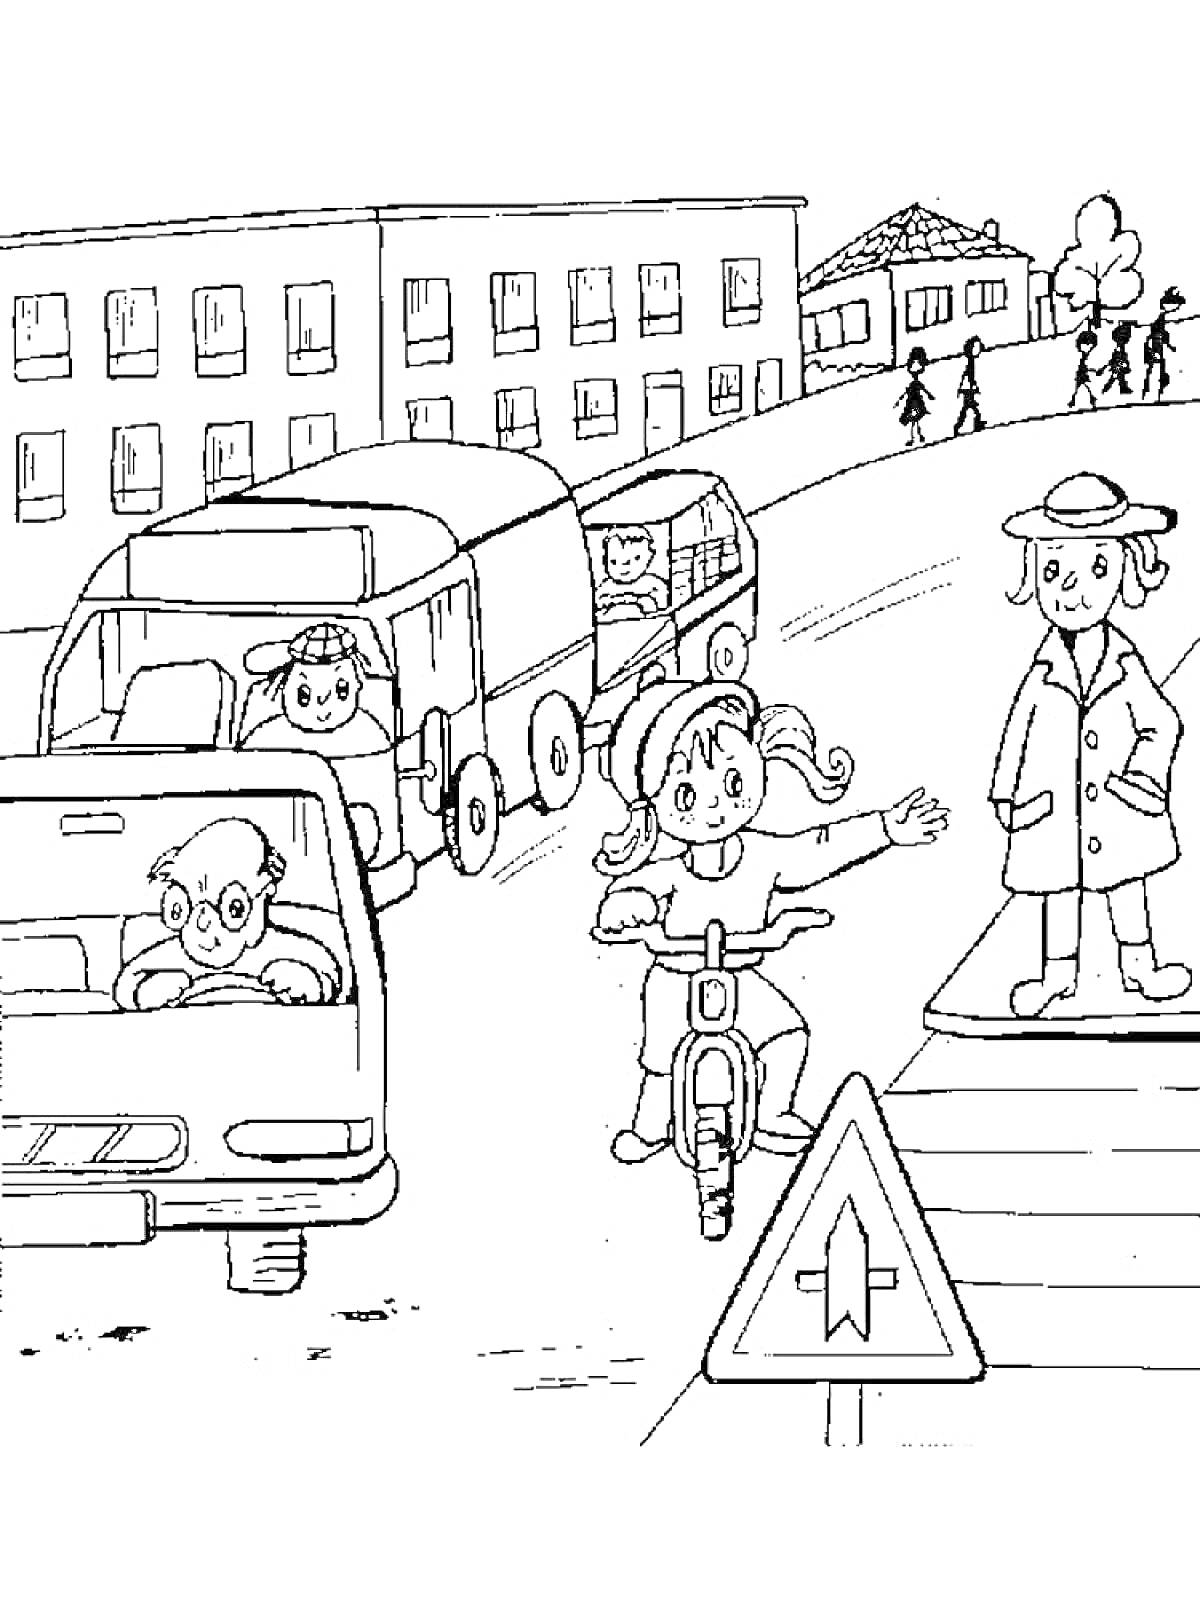 Раскраска Дети на дороге: девочка на велосипеде, грузовик, легковая машина, пешеход на перекрестке, знак приоритета дороги, жилые дома